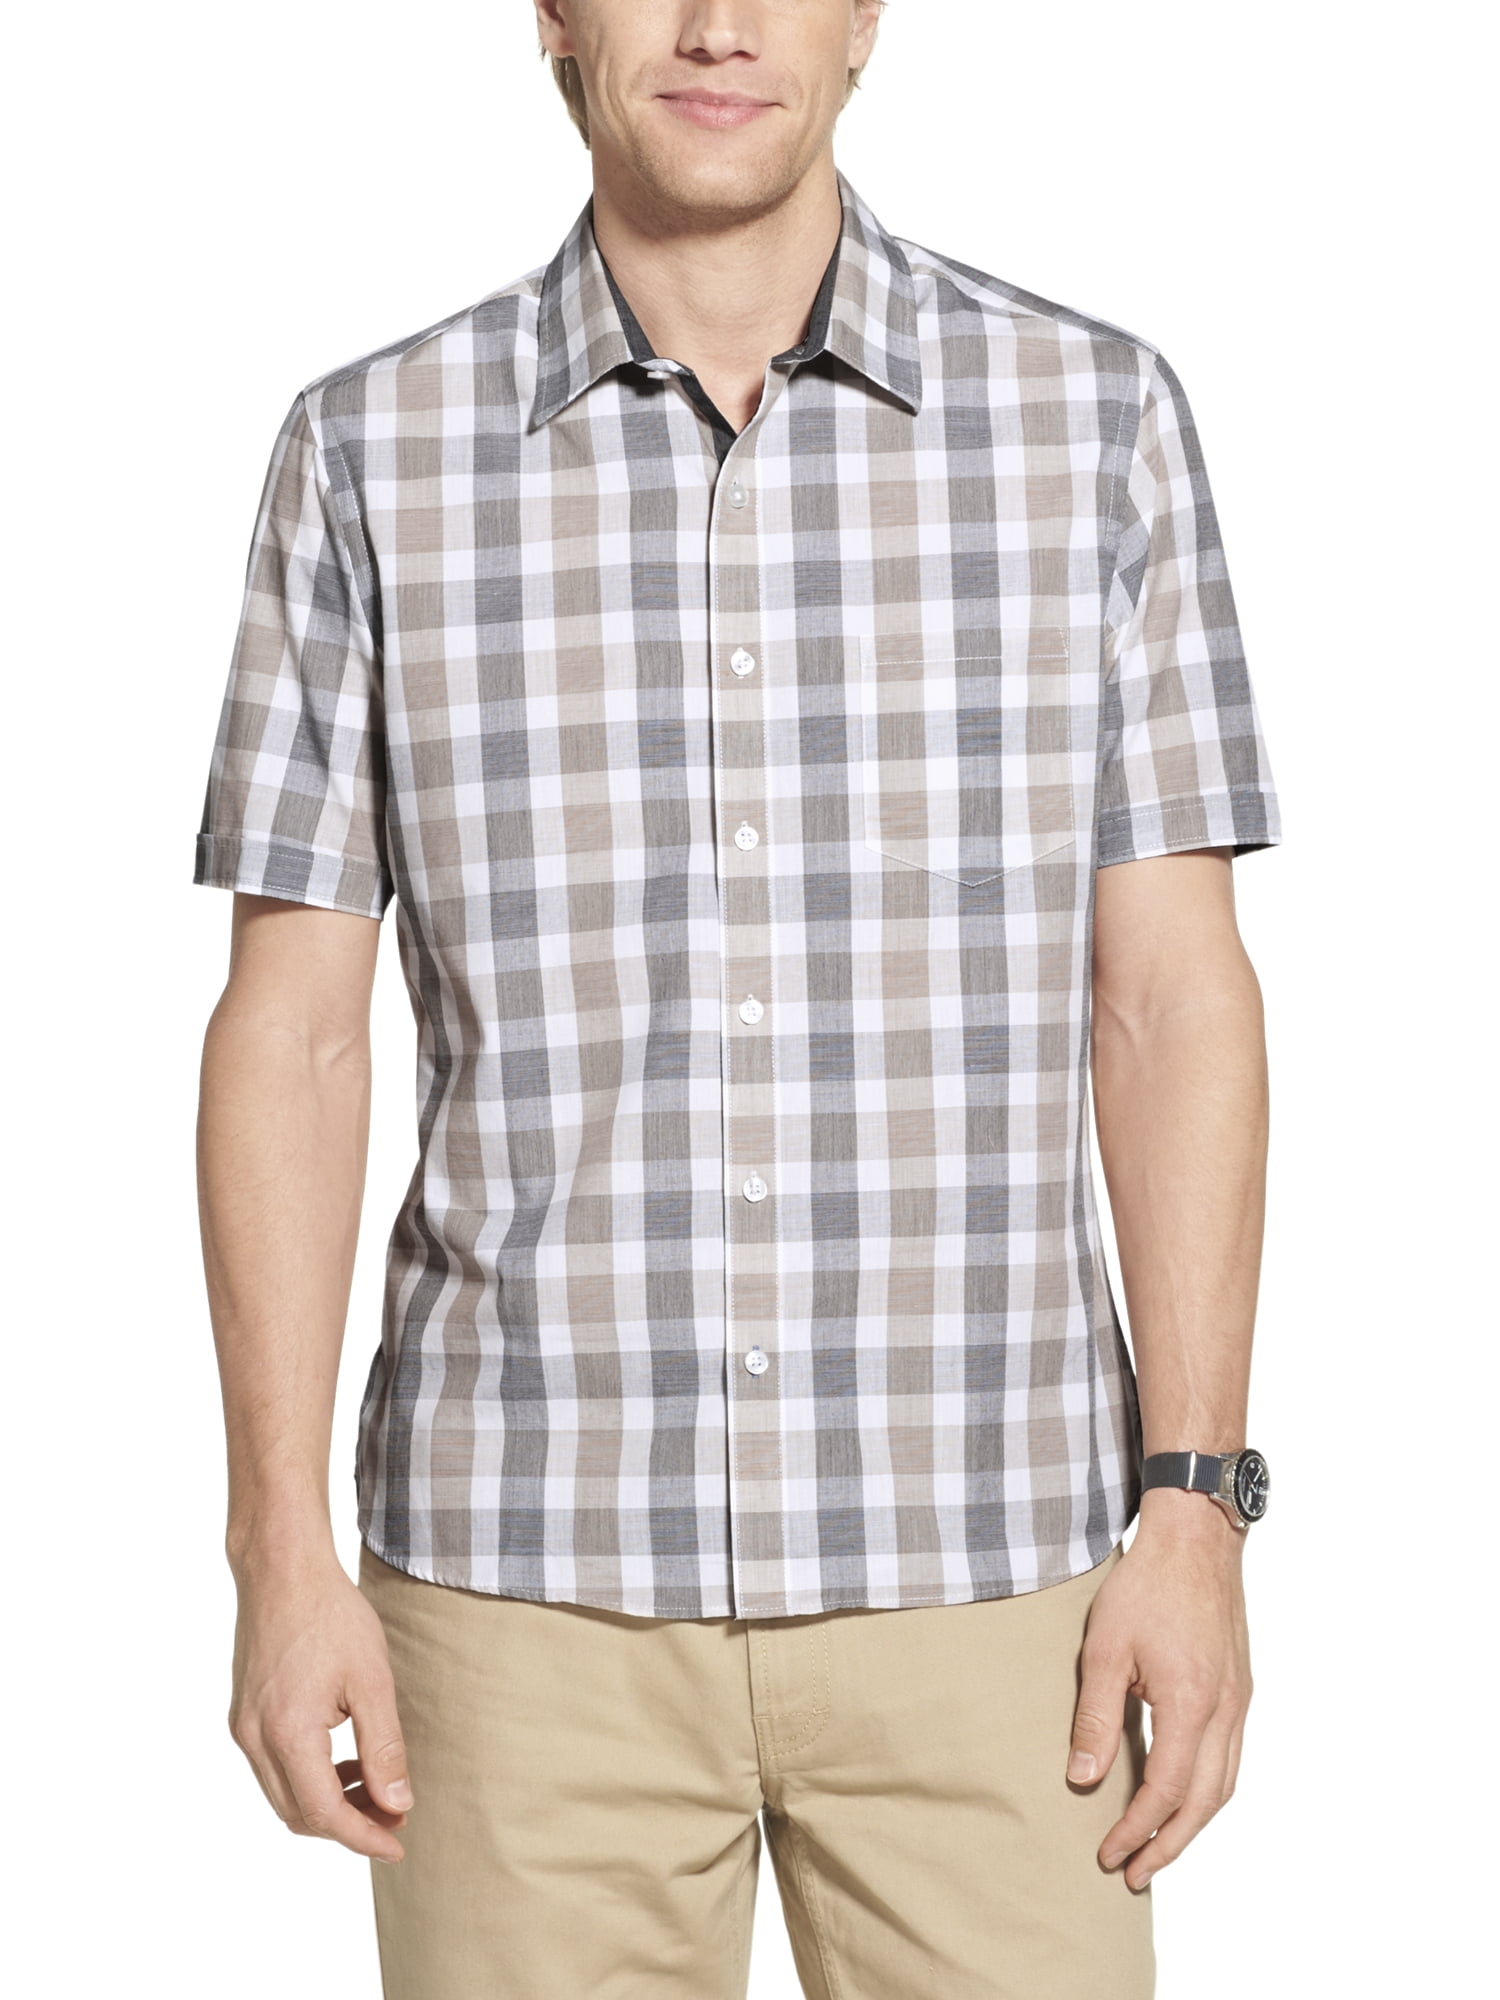 Geoffrey Beene Men's Big and Tall Short Sleeve Shirt - Walmart.com